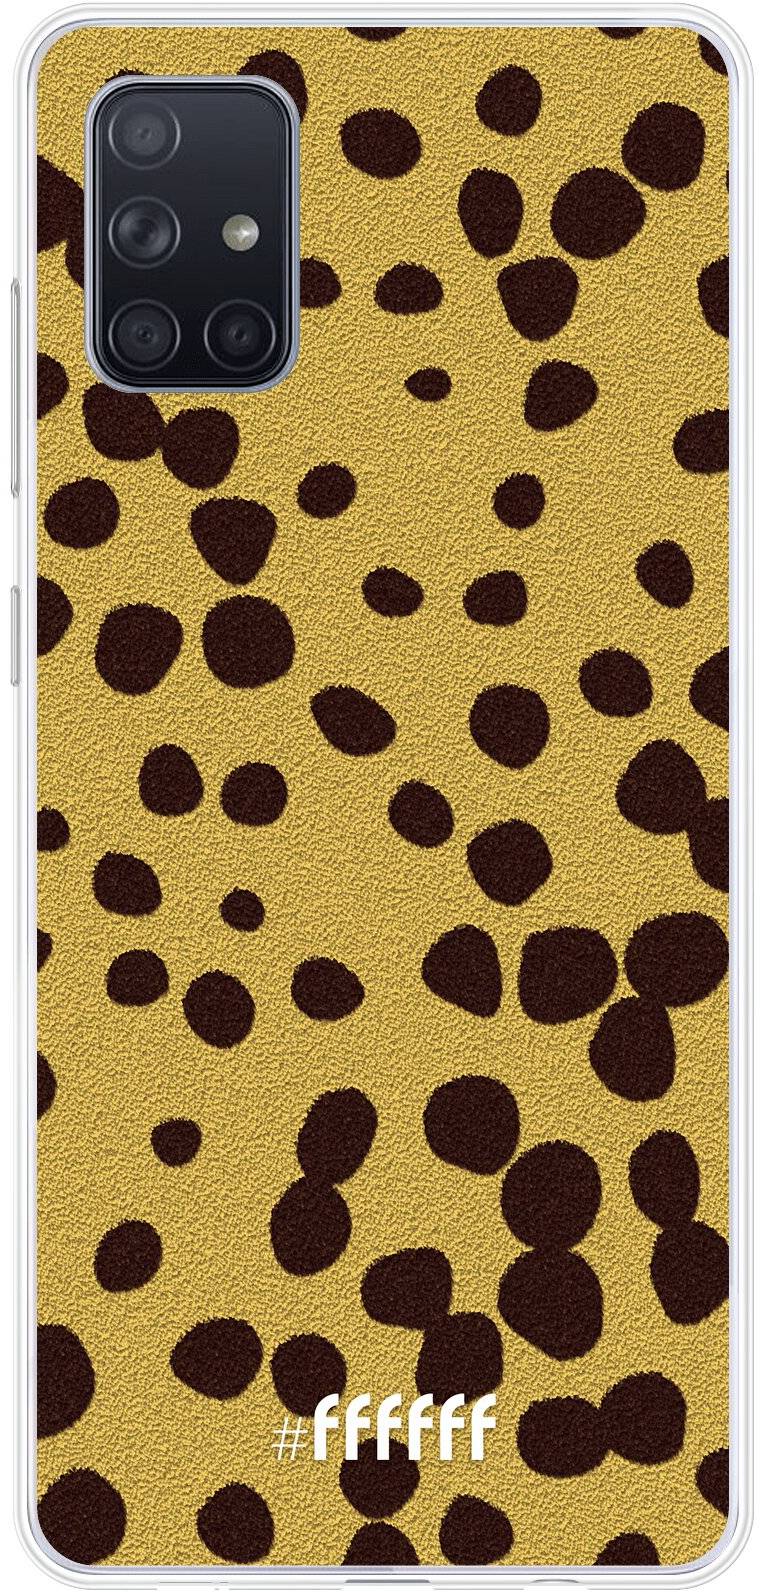 Cheetah Print Galaxy A71